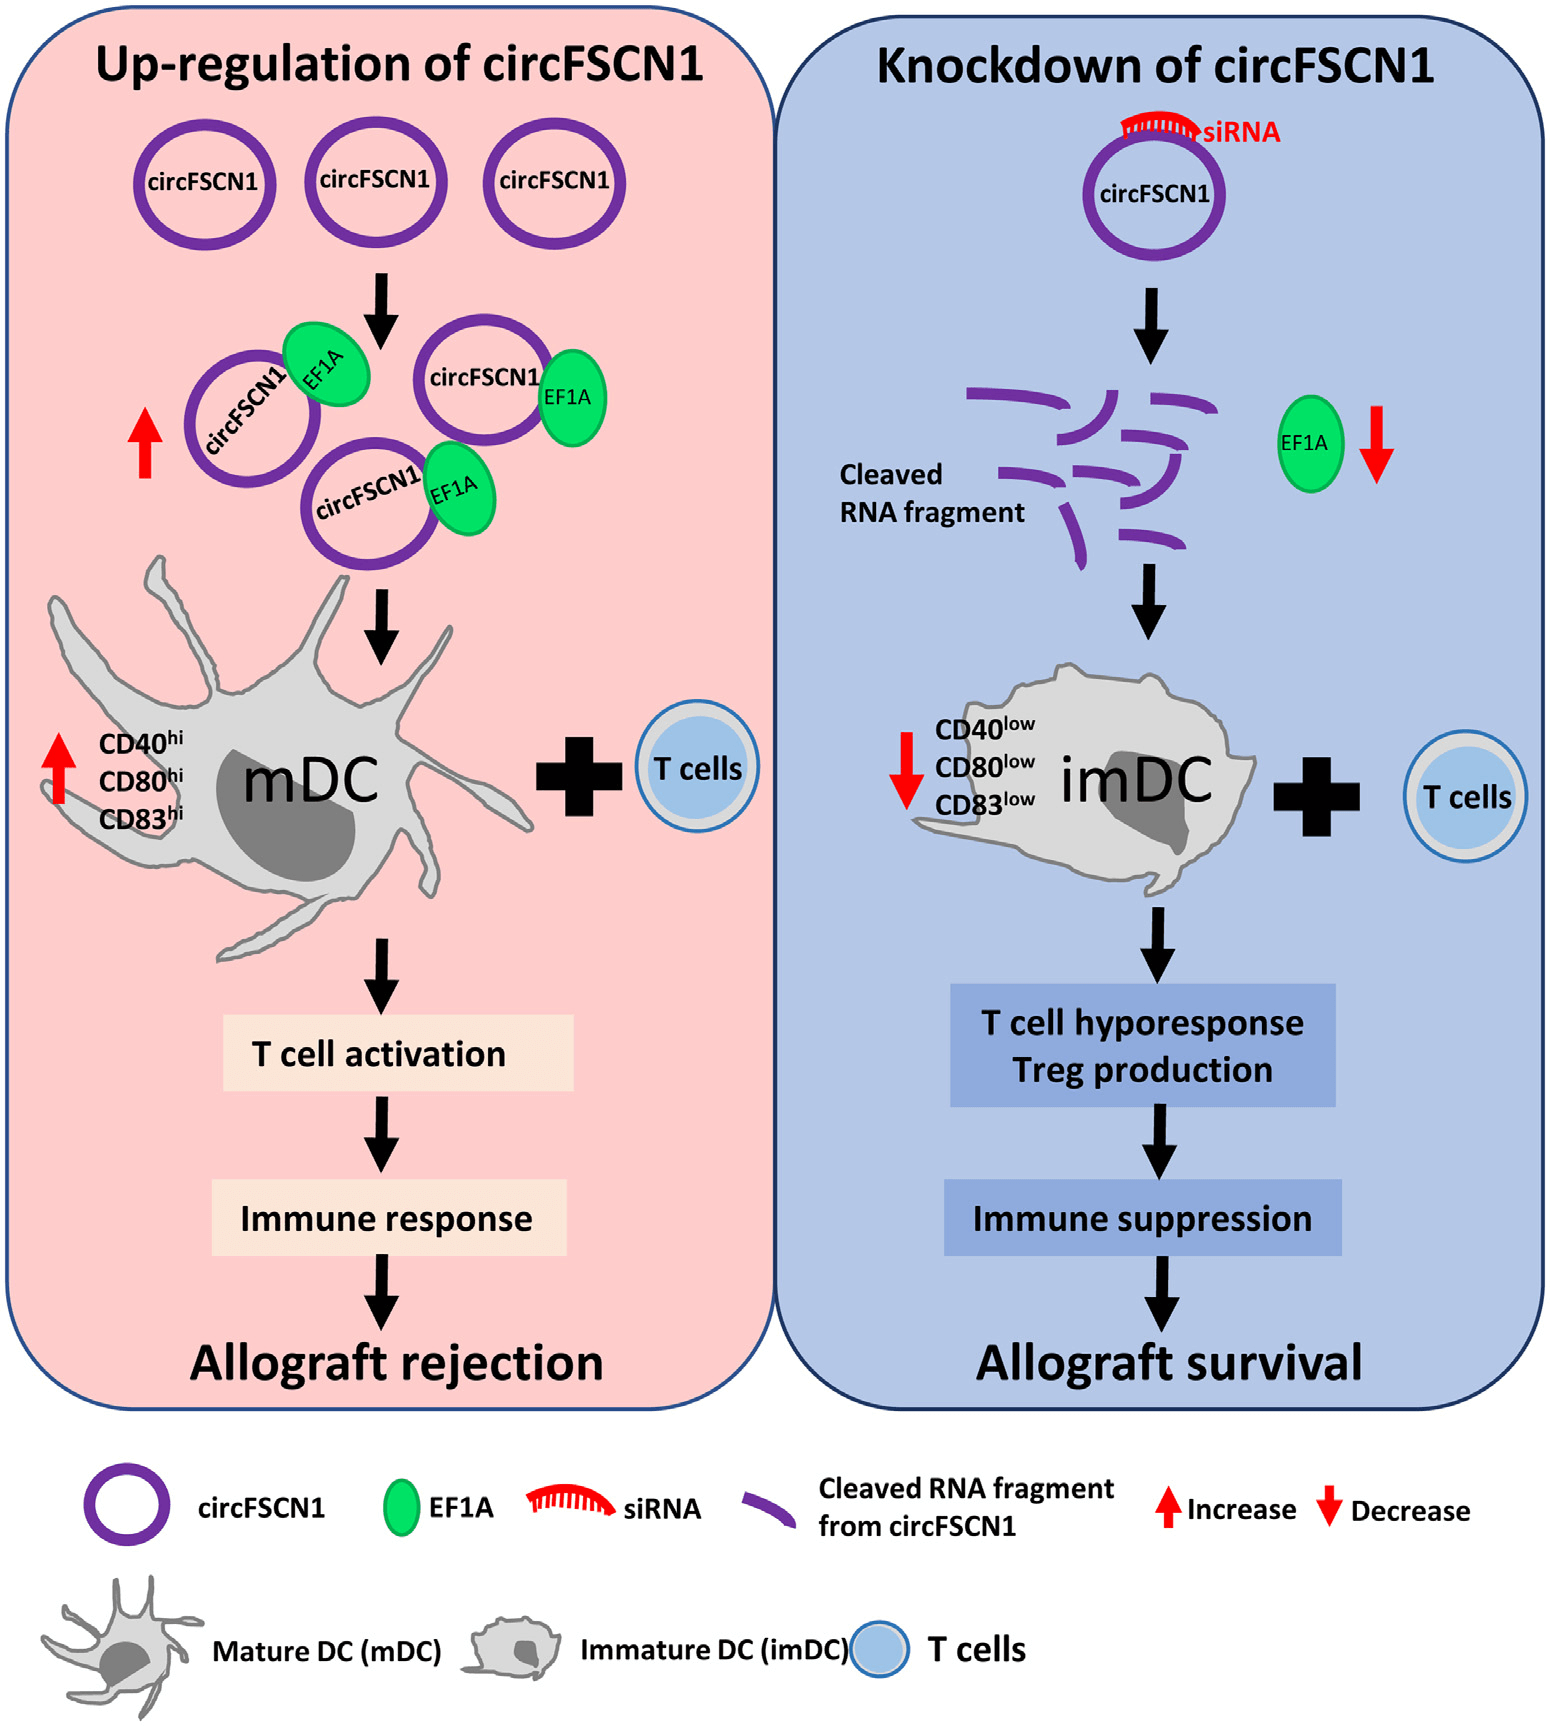 circFSCN1/EF-1A 在 DCs 介导的同种免疫调节中的作用和 circFSCN1 敲低在同种免疫抑制中的作用。